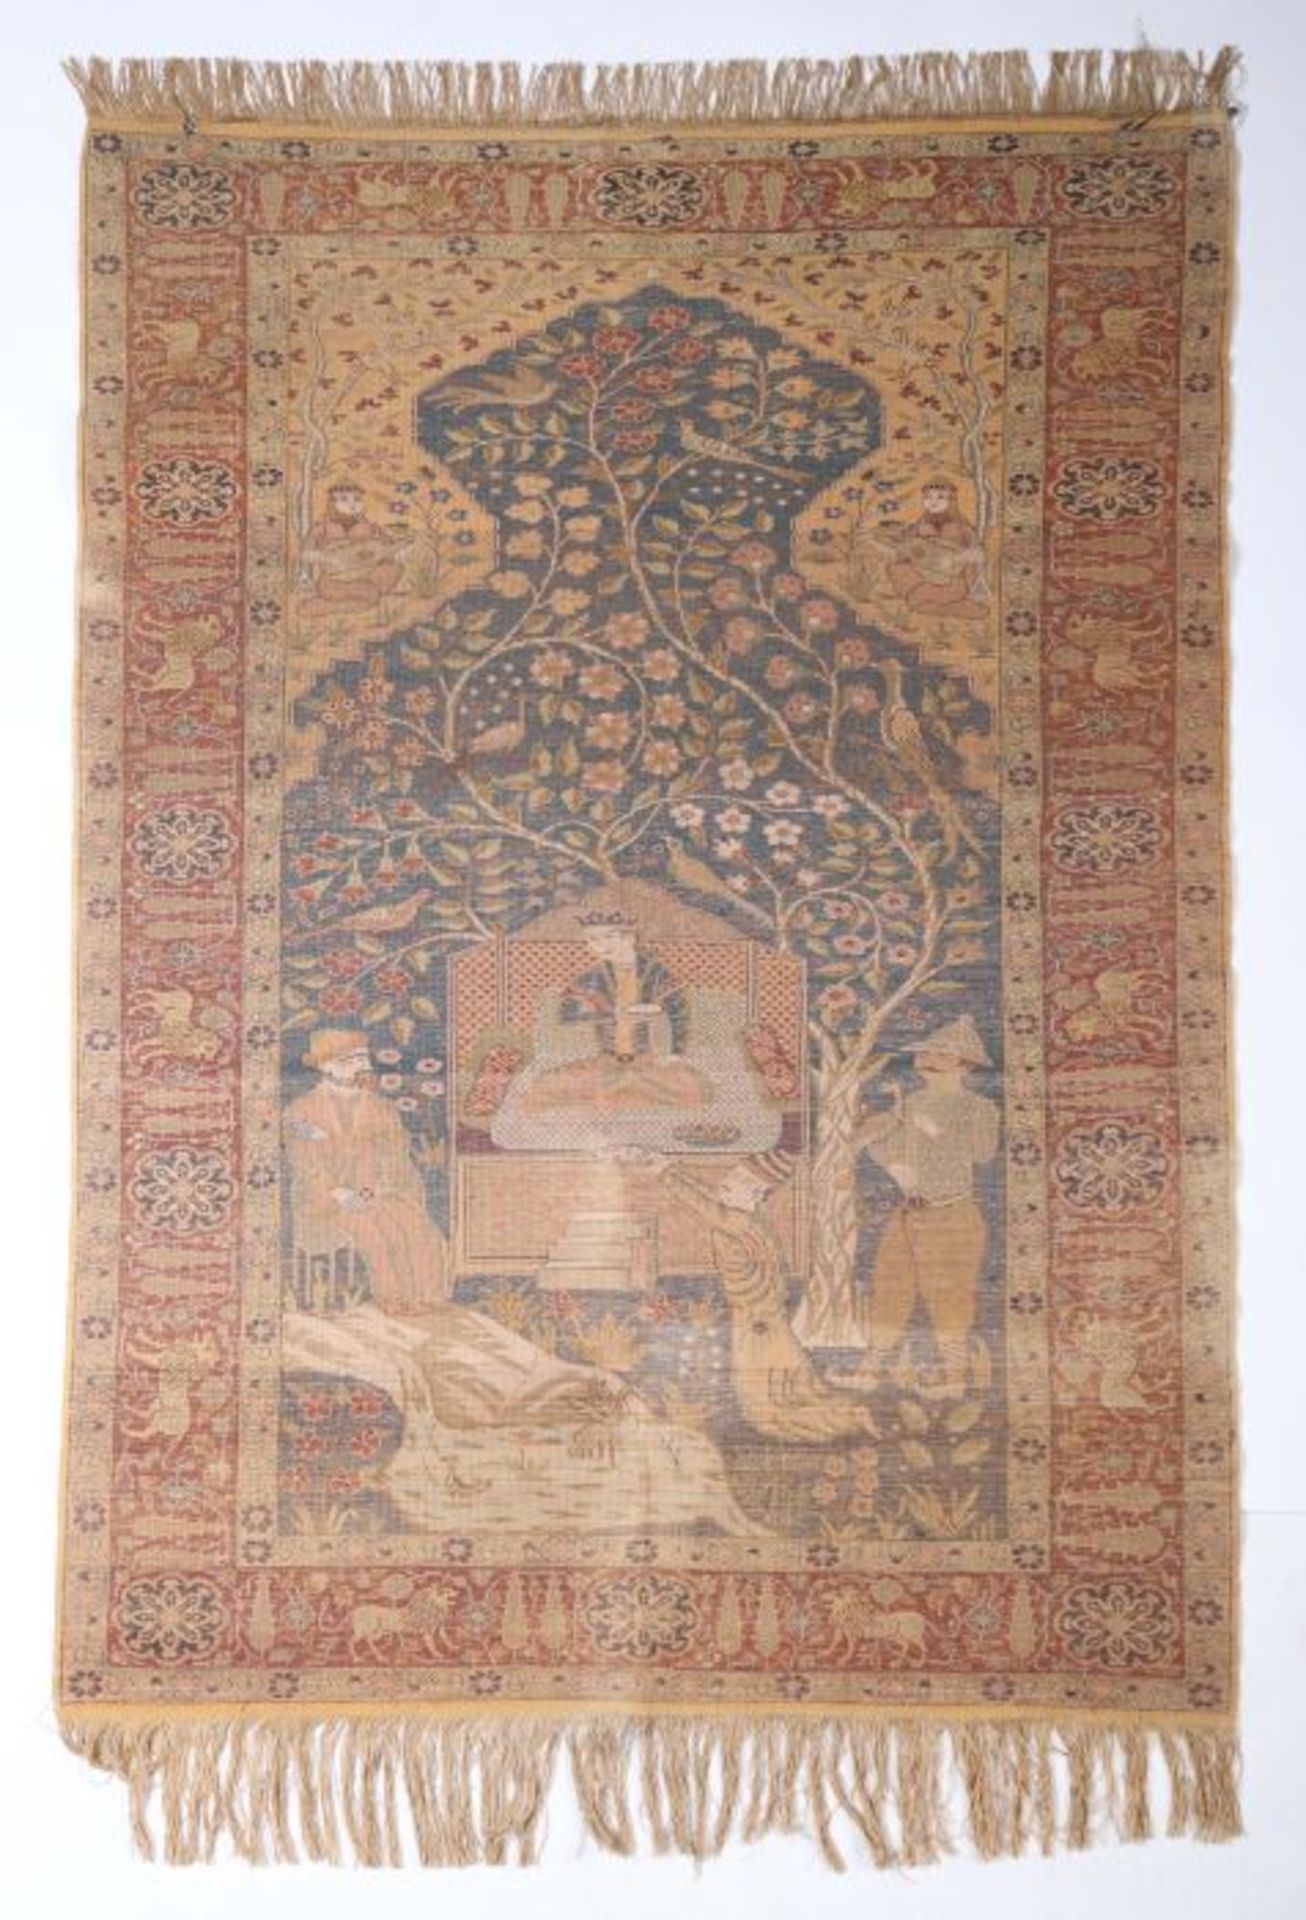 Ipekli Kayseri Bildteppich Anatolien, 1. Viertel 20. Jh., mercerisierte Baumwolle mit seidigem - Image 2 of 2